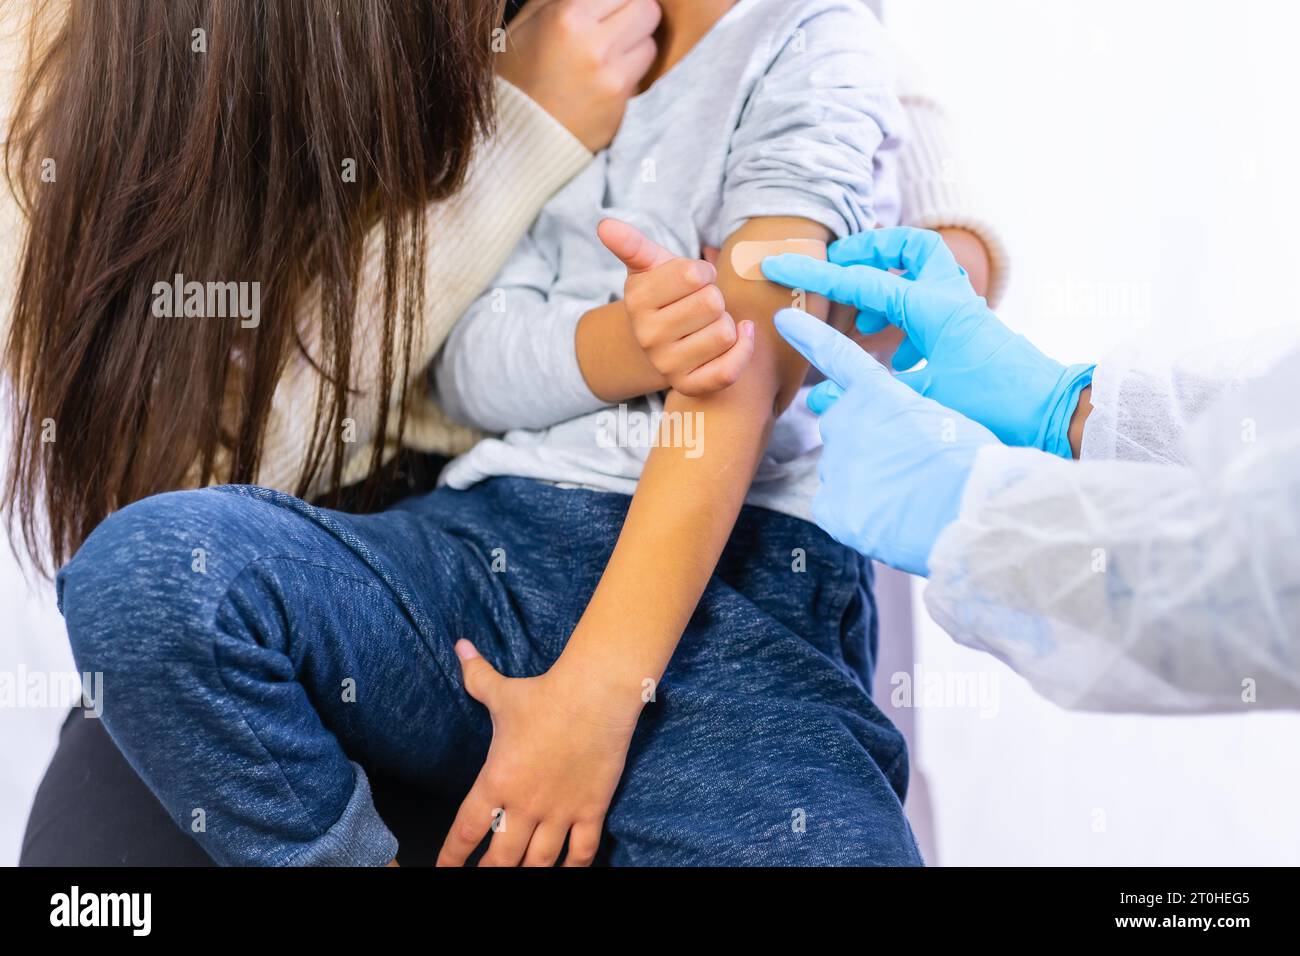 Bambino spaventato dopo l'iniezione di vaccinazione da parte di un medico femminile. Vaccinazione dei bambini. Immunizzazione nella pandemia di coronavirus, covid-19 Foto Stock